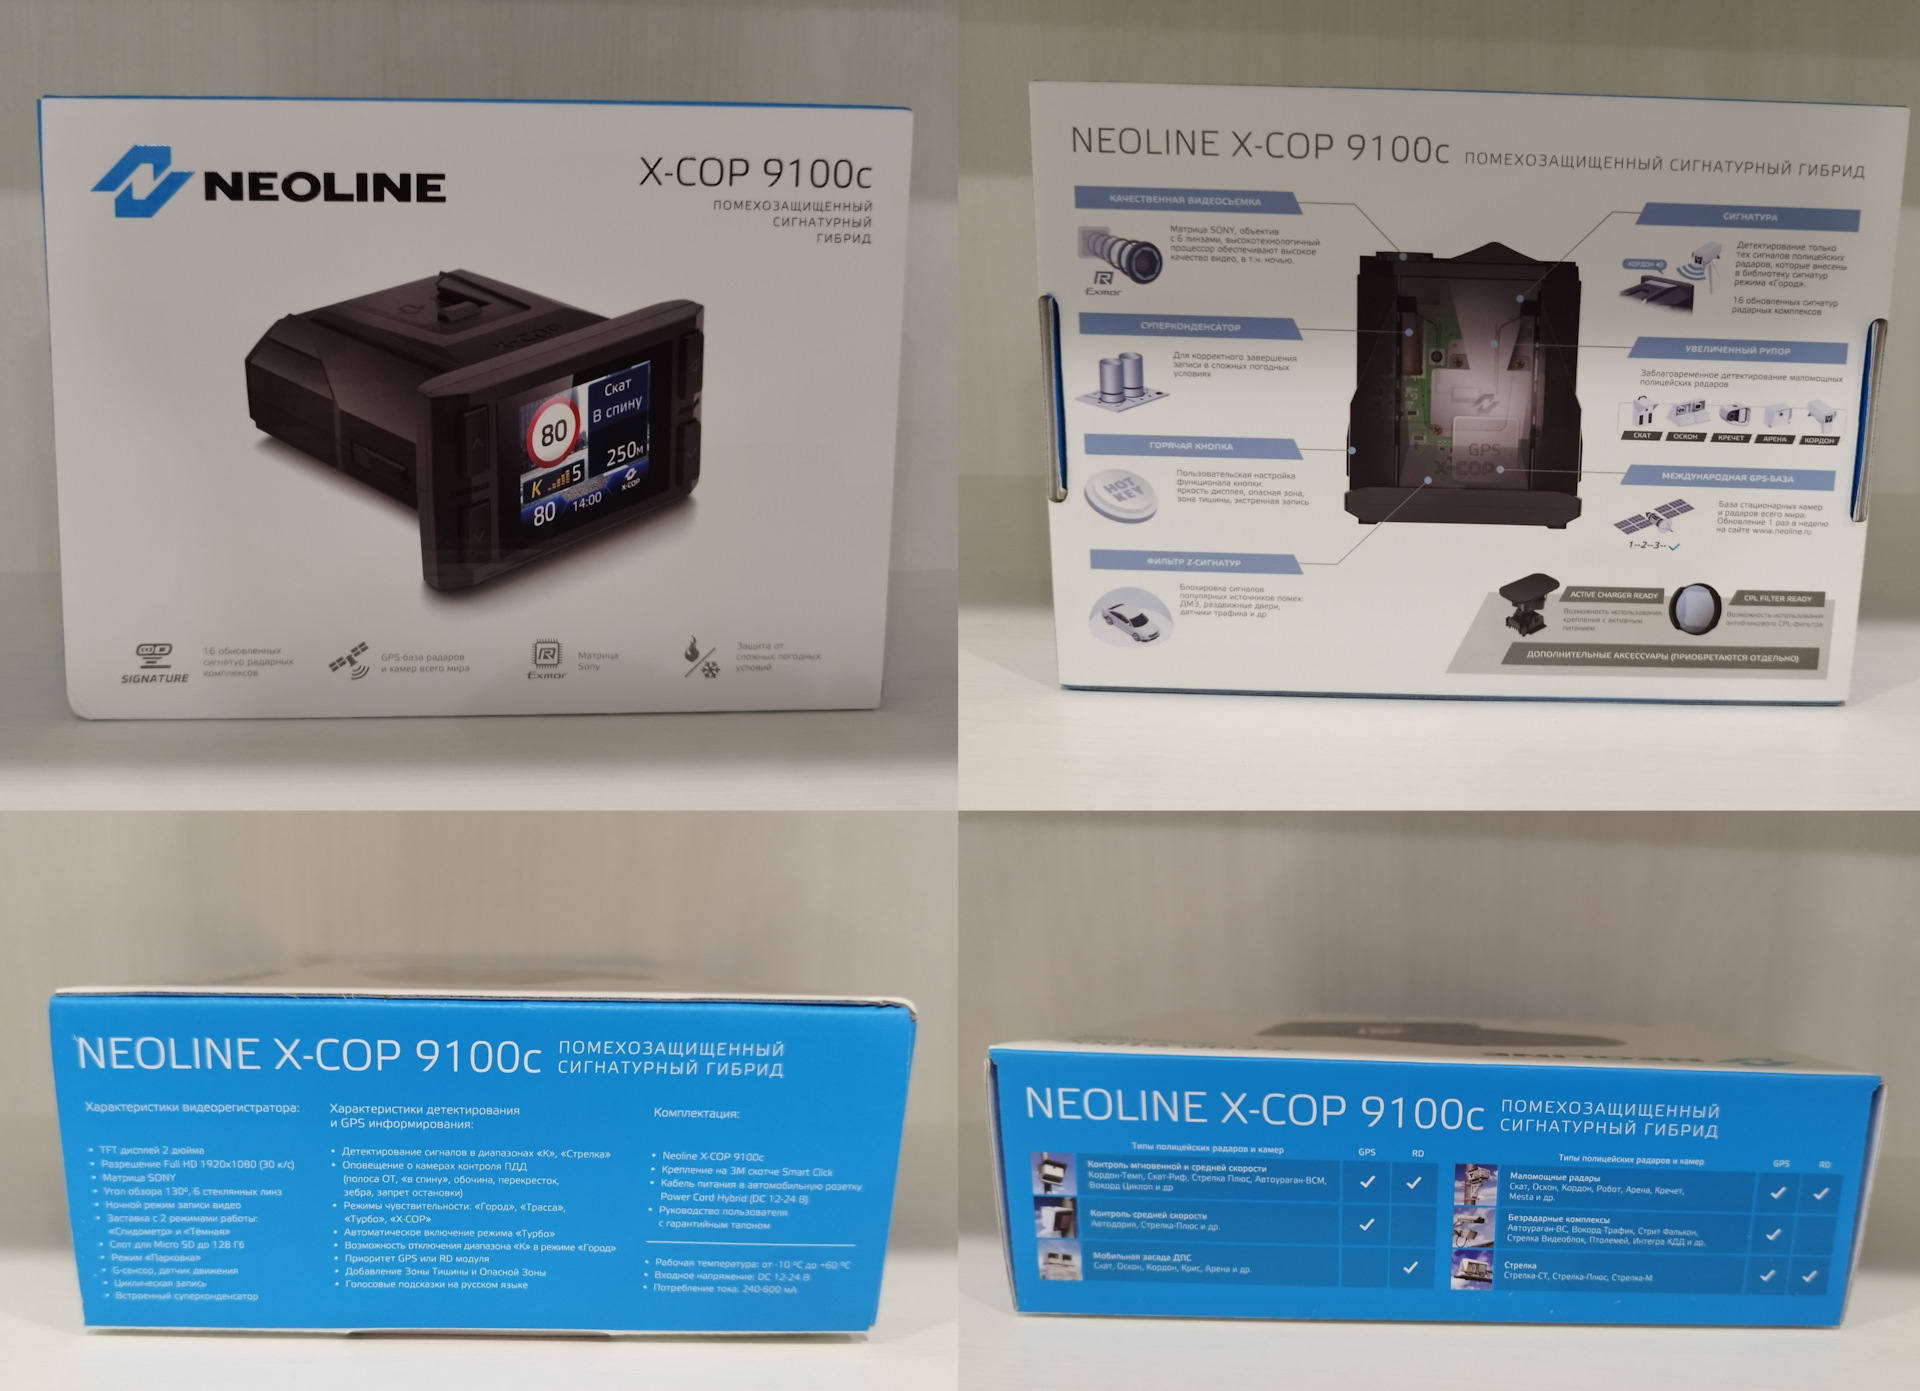 Neoline x cop 9100c. Крепление для Neoline x-cop 9100c. Neoline x-cop 9100c цена. Где на коробке находится серийный номер устройства гибрила Neoline xcop 9100z.